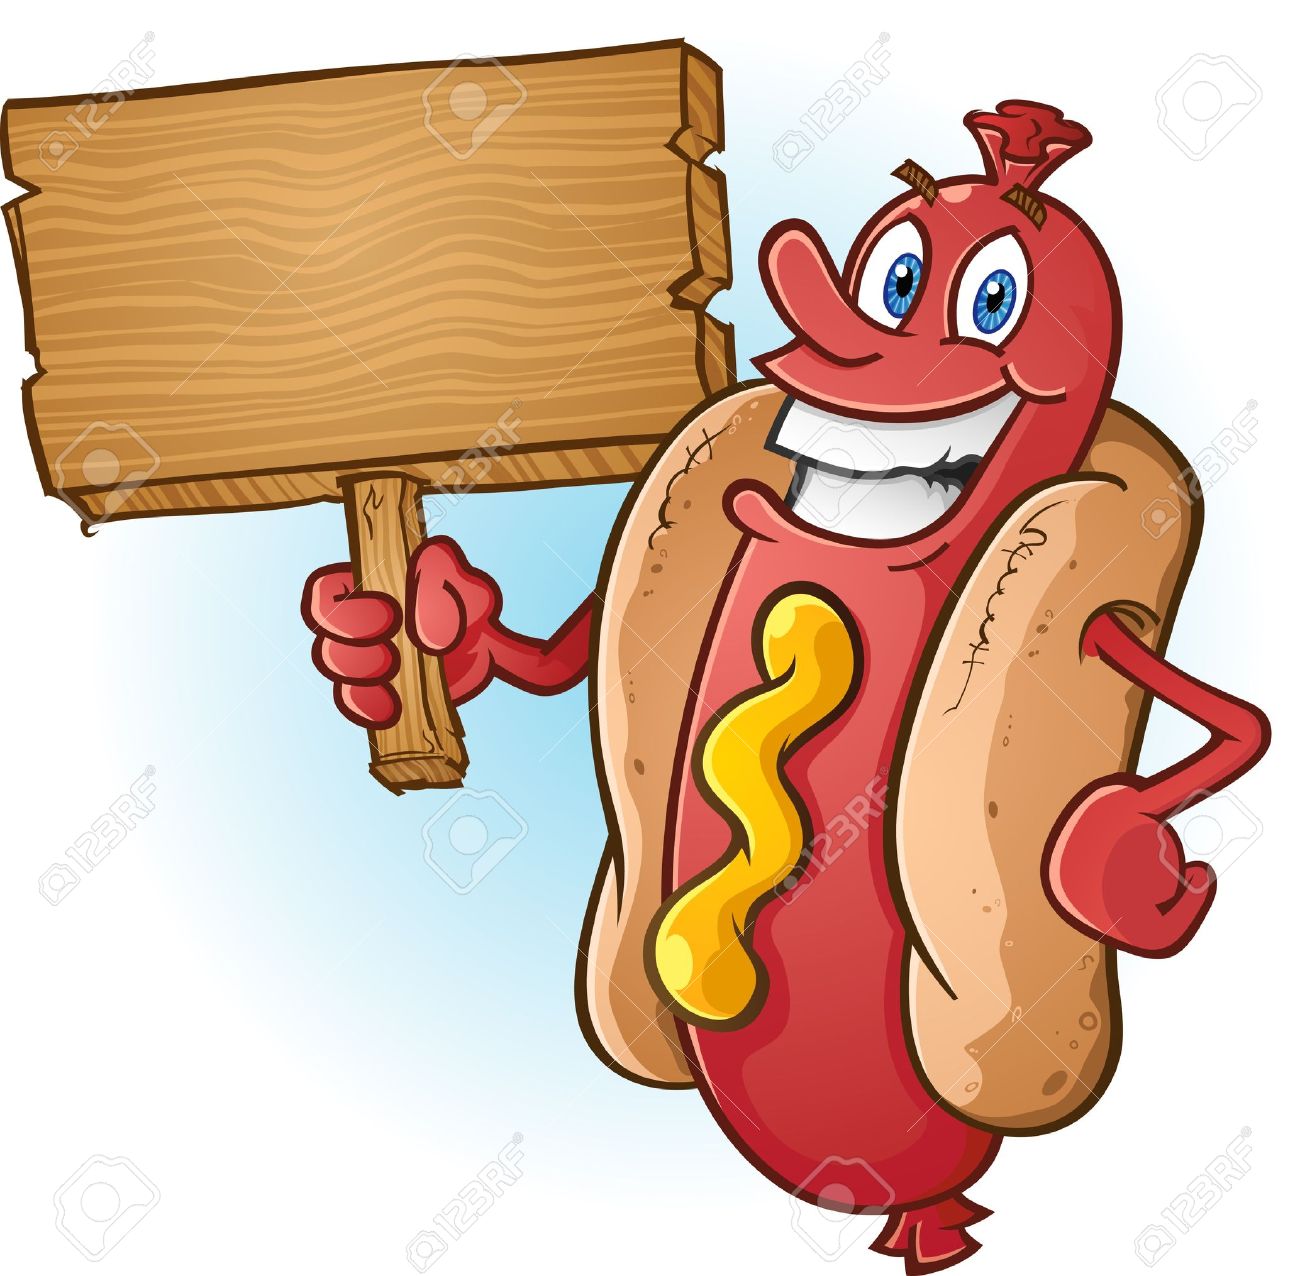 Free Hot Dog Sandwich Clip Ar